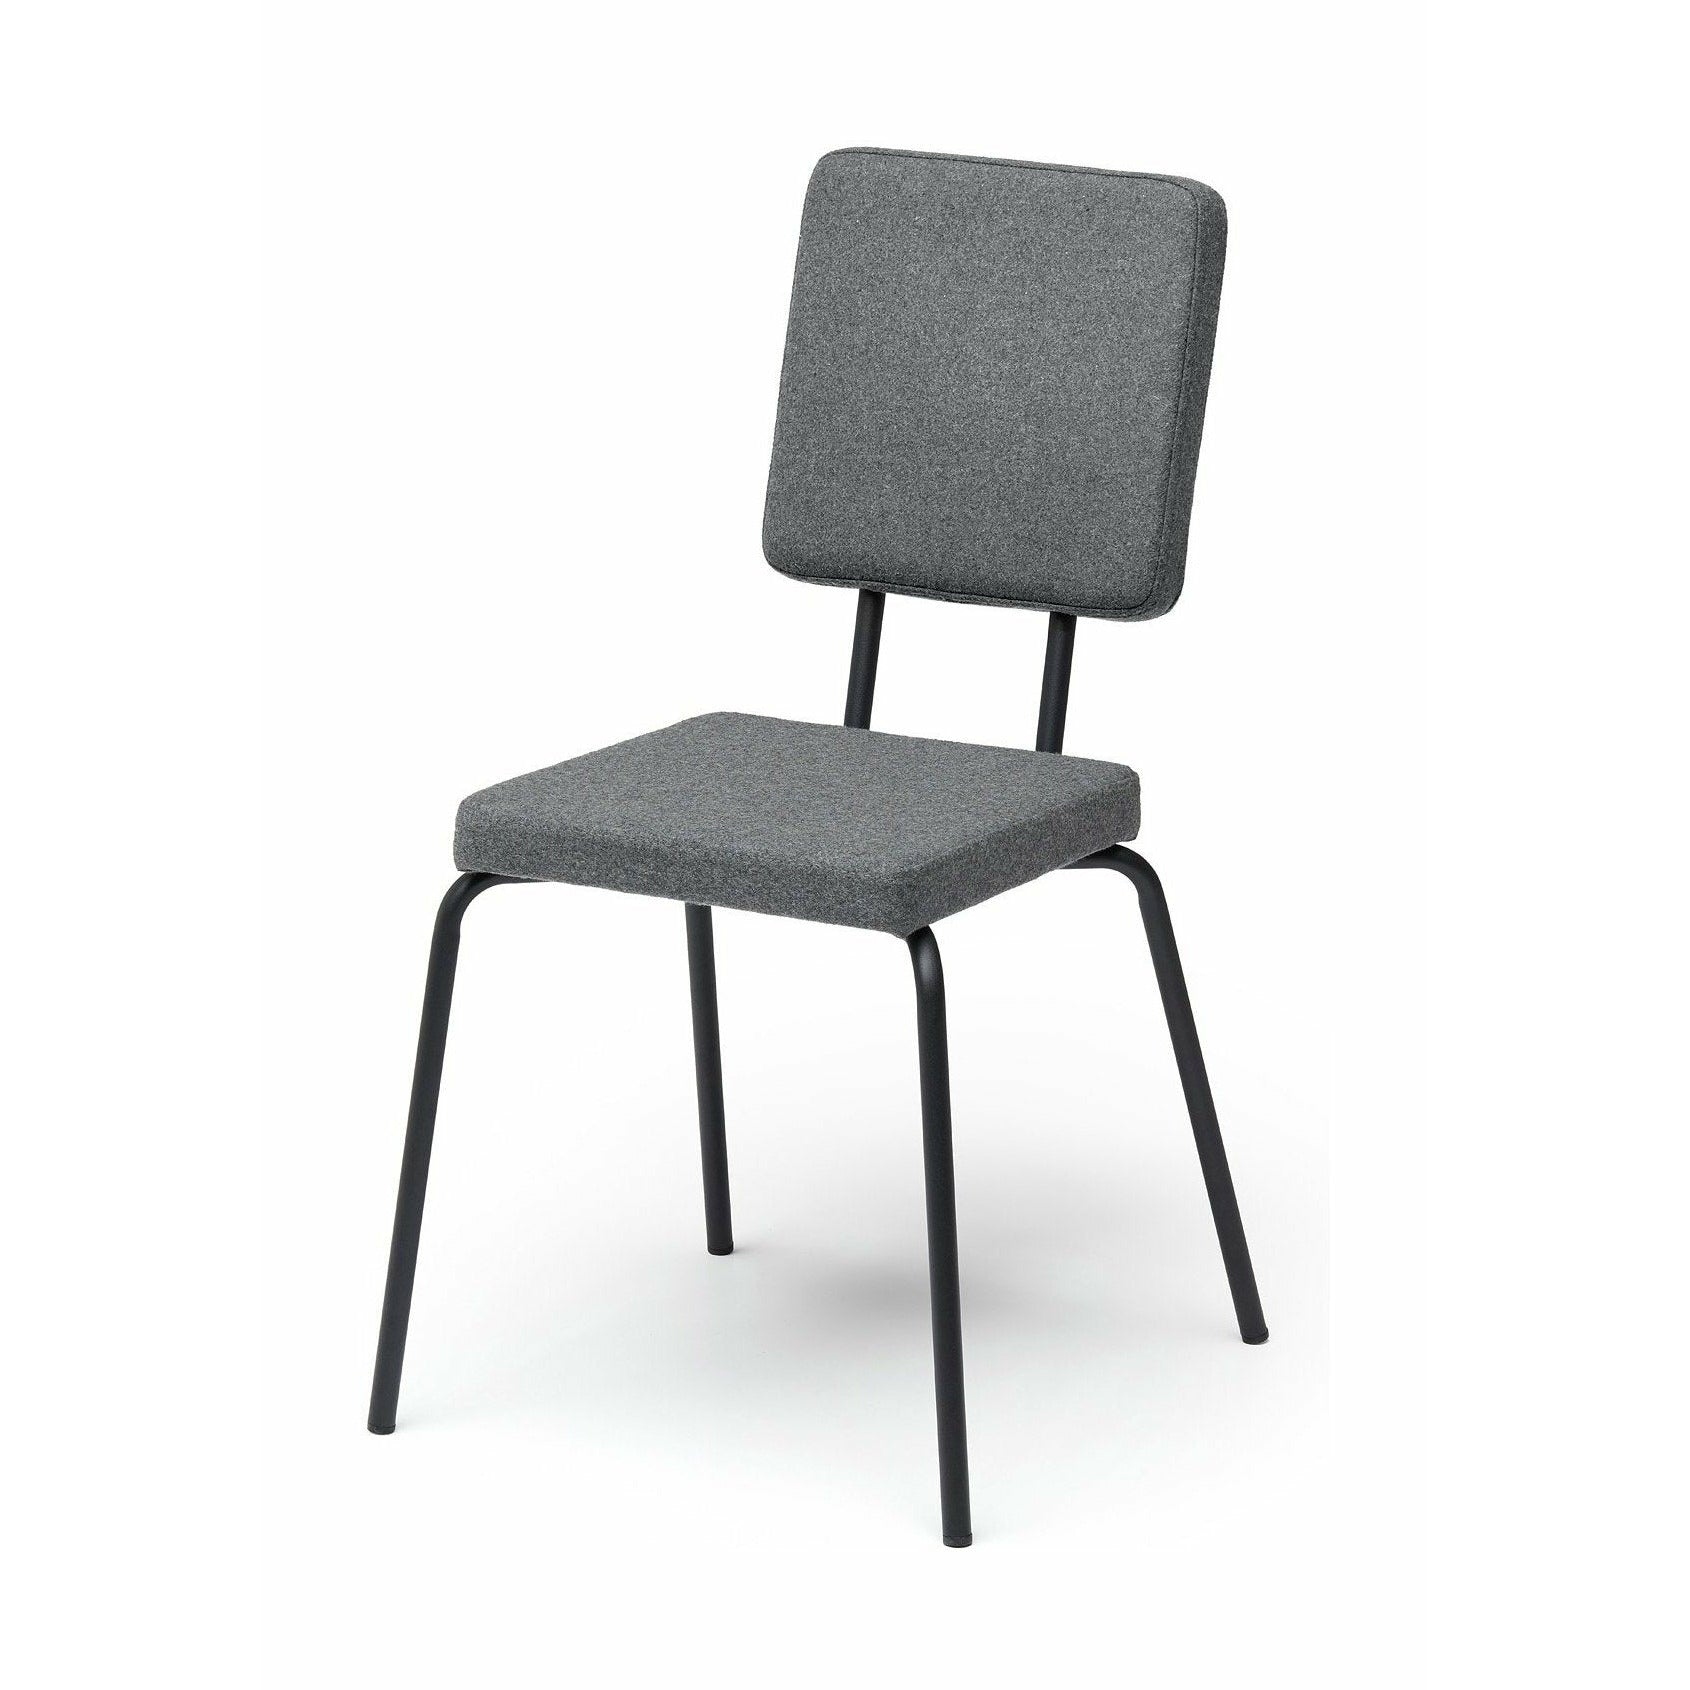 Sedile sedia per opzione puik e schienale quadrati, grigio chiaro